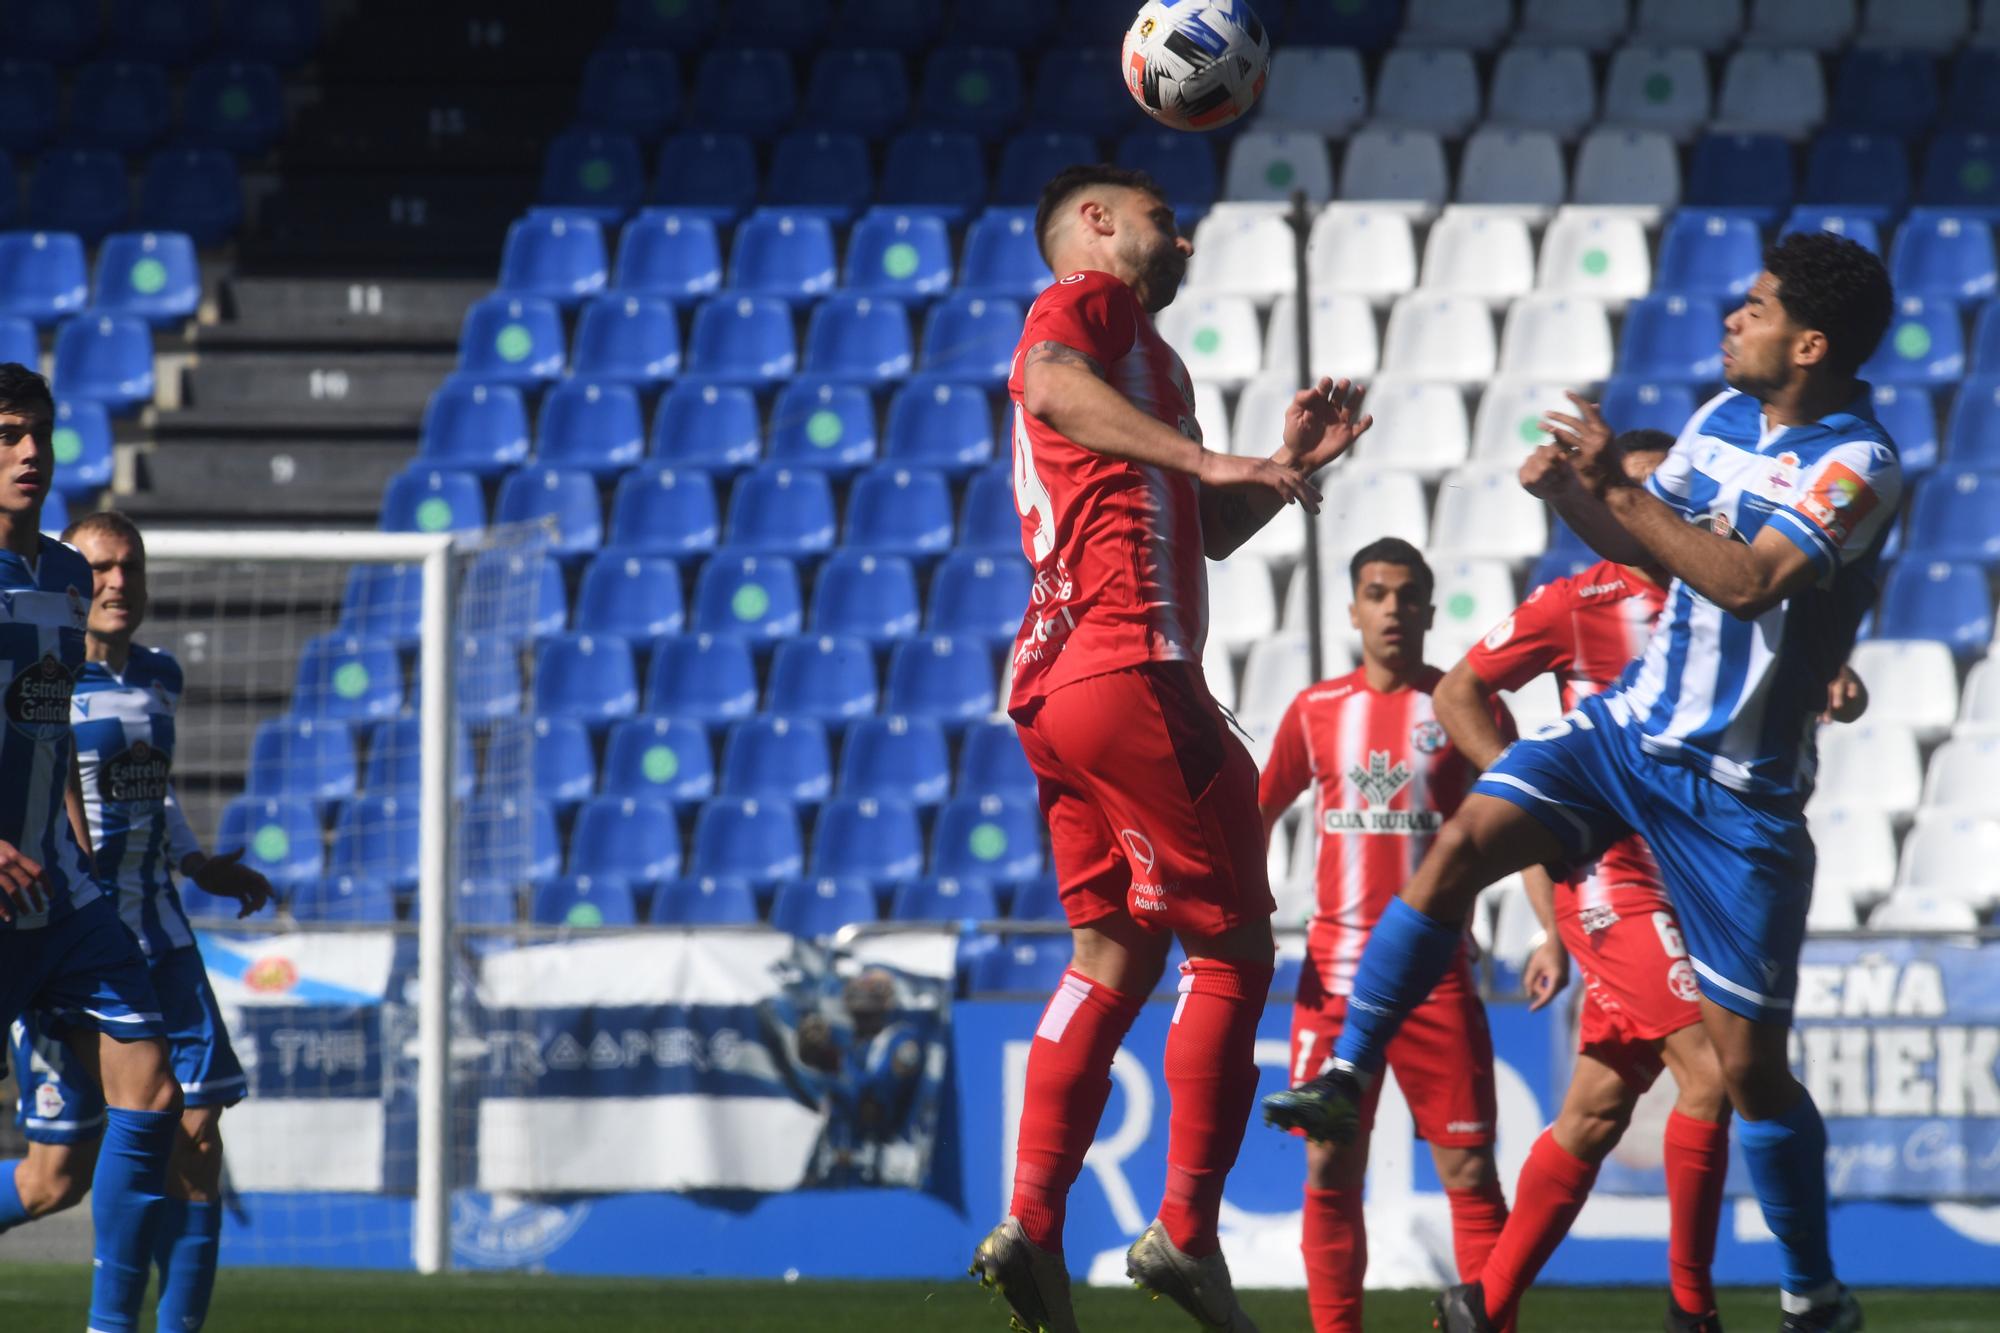 El Dépor le gana al Zamora 2-0, pero se queda sin fase de ascenso